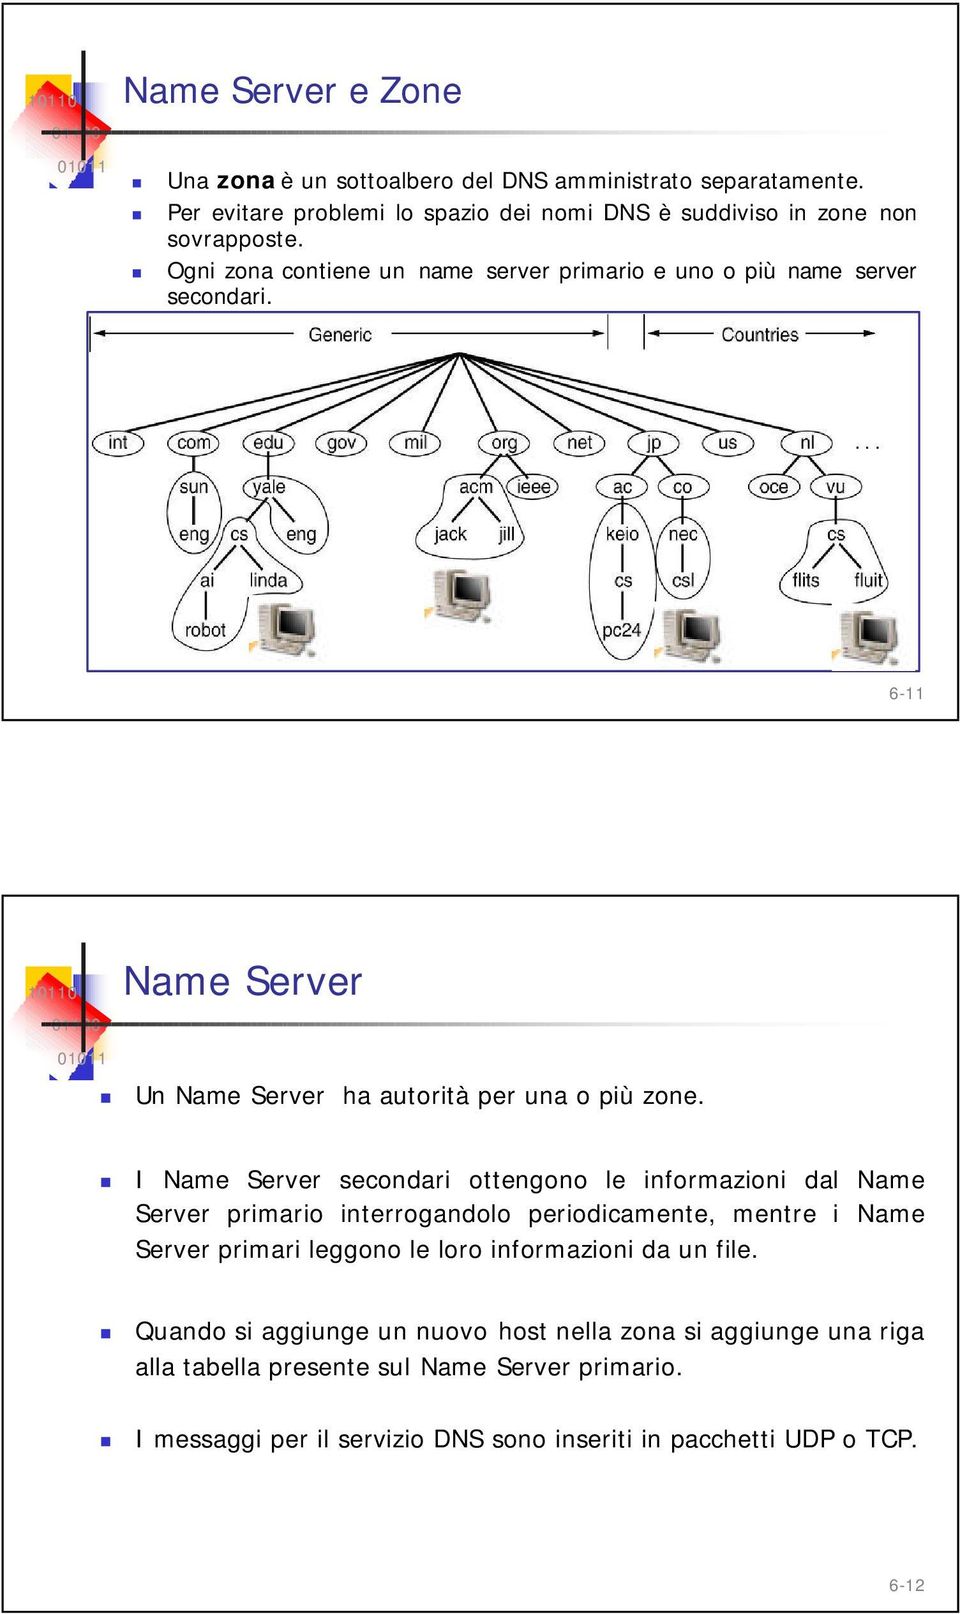 I Name Server secondari ottengono le informazioni dal Name Server primario interrogandolo periodicamente, mentre i Name Server primari leggono le loro informazioni da